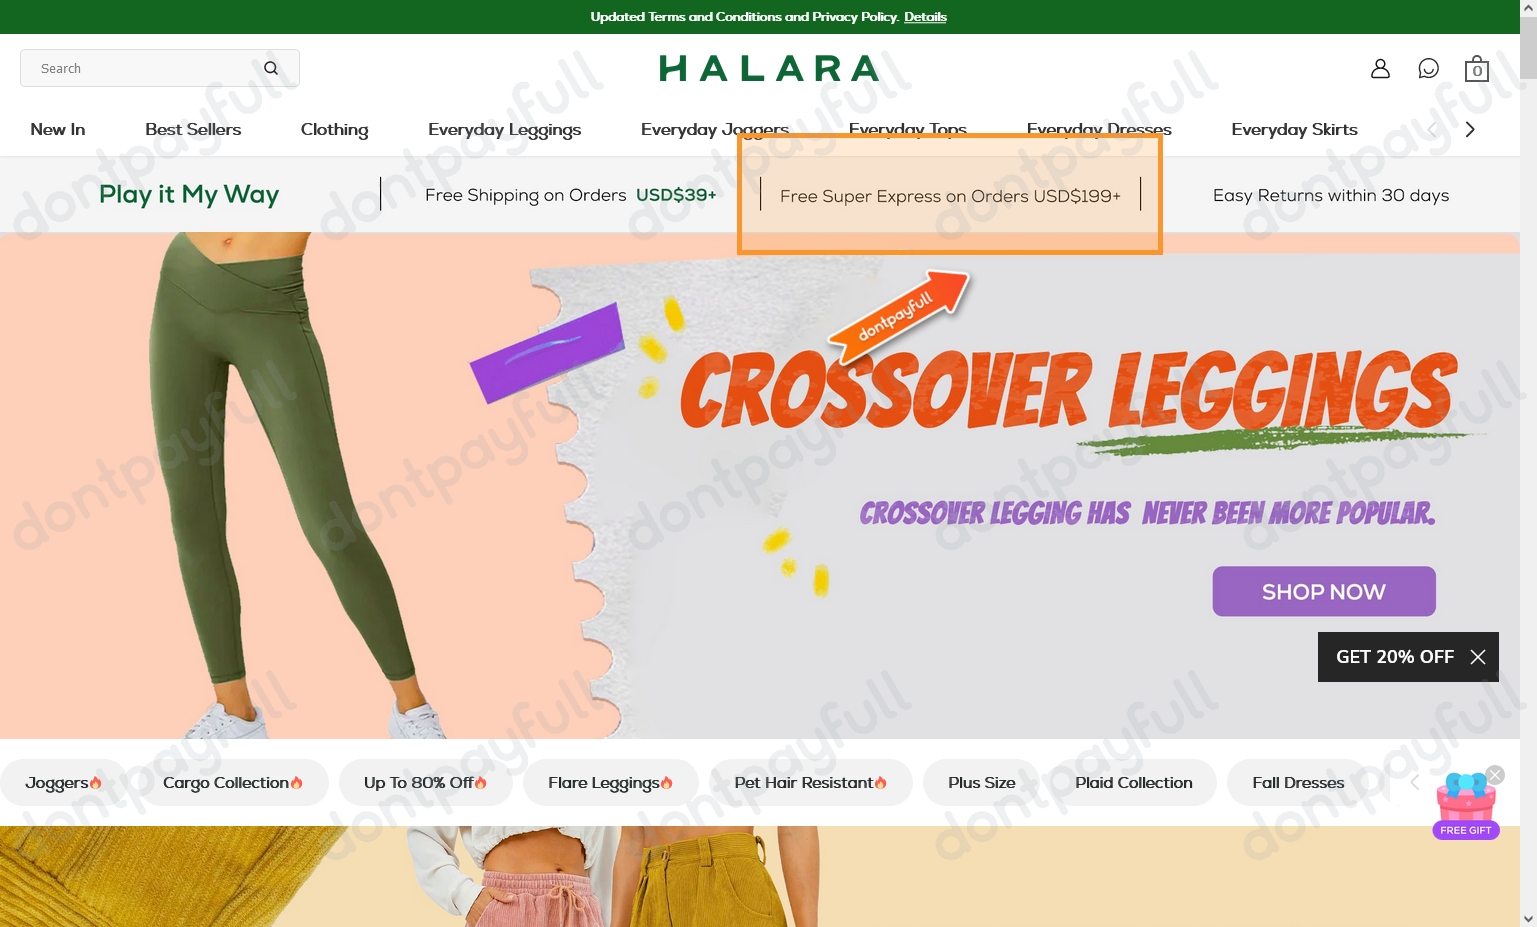 Use code milani01 at checkout 🛒to get 15% off #Halara